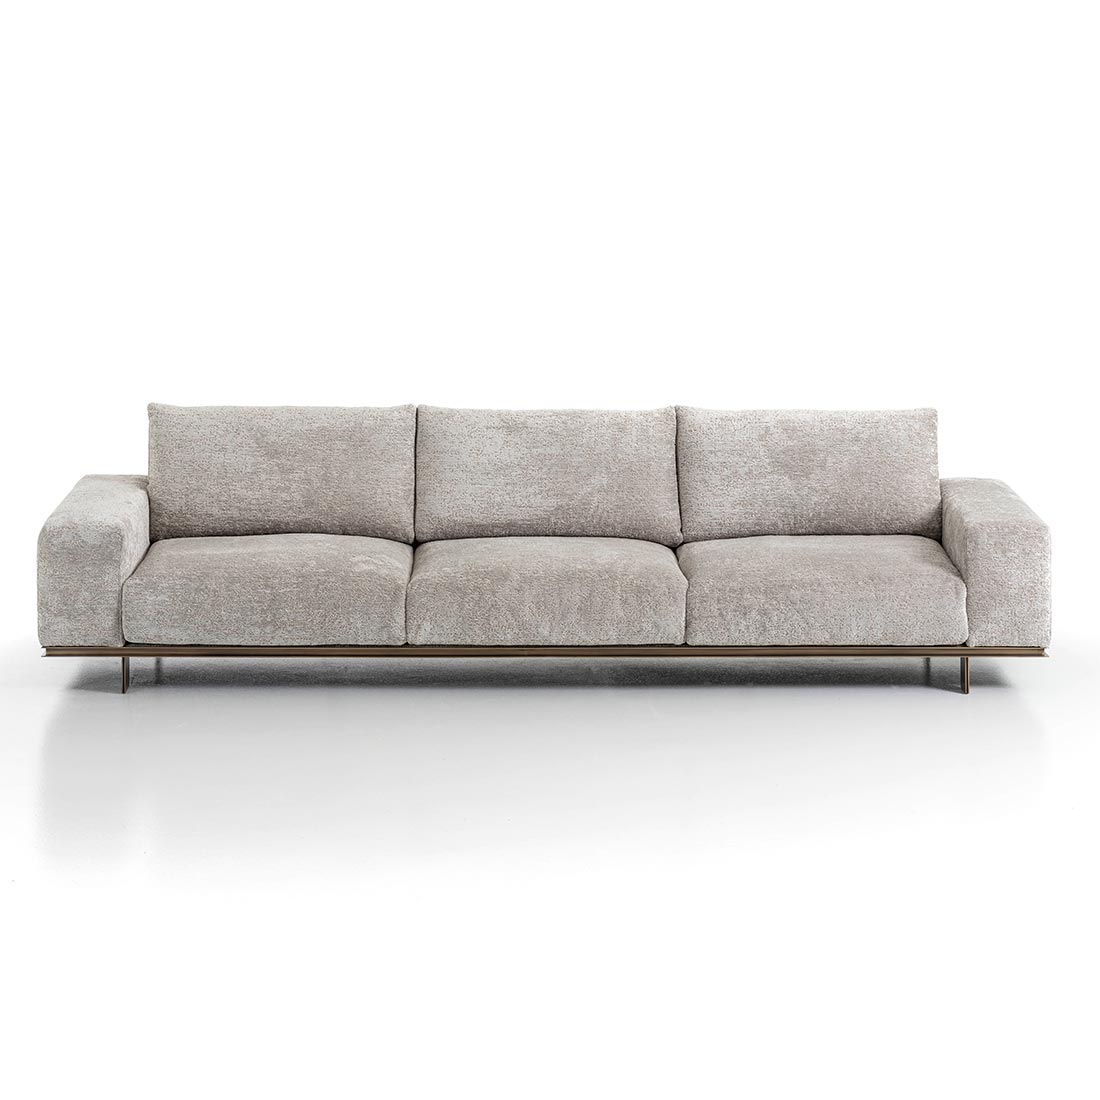 Memphis sofa